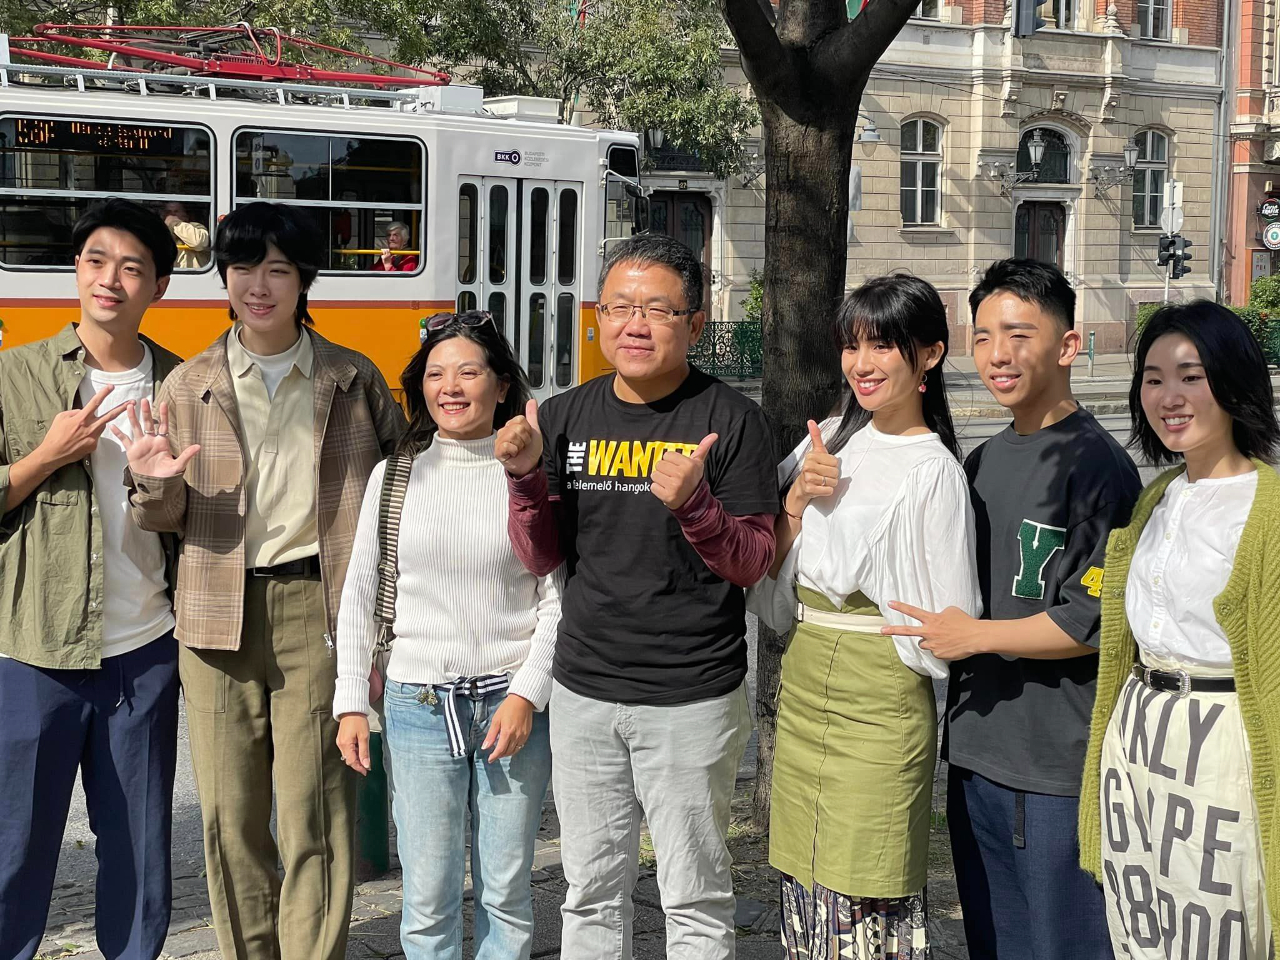 Idén Budapest 11. kerületében tartott Őszi Fesztivállal együttműködve meghívtuk a "The Wanted" tajvani acapella együttest, hogy klasszikus dalokat hozzon el a magyar közönségnek; Liu Shih-chung nagykövet úr bemutatott pár tajvani ételt, és személyesen vezette a Wanted csapatot körbe egy fotókiállításon, ami a tajnani ételekről szólt